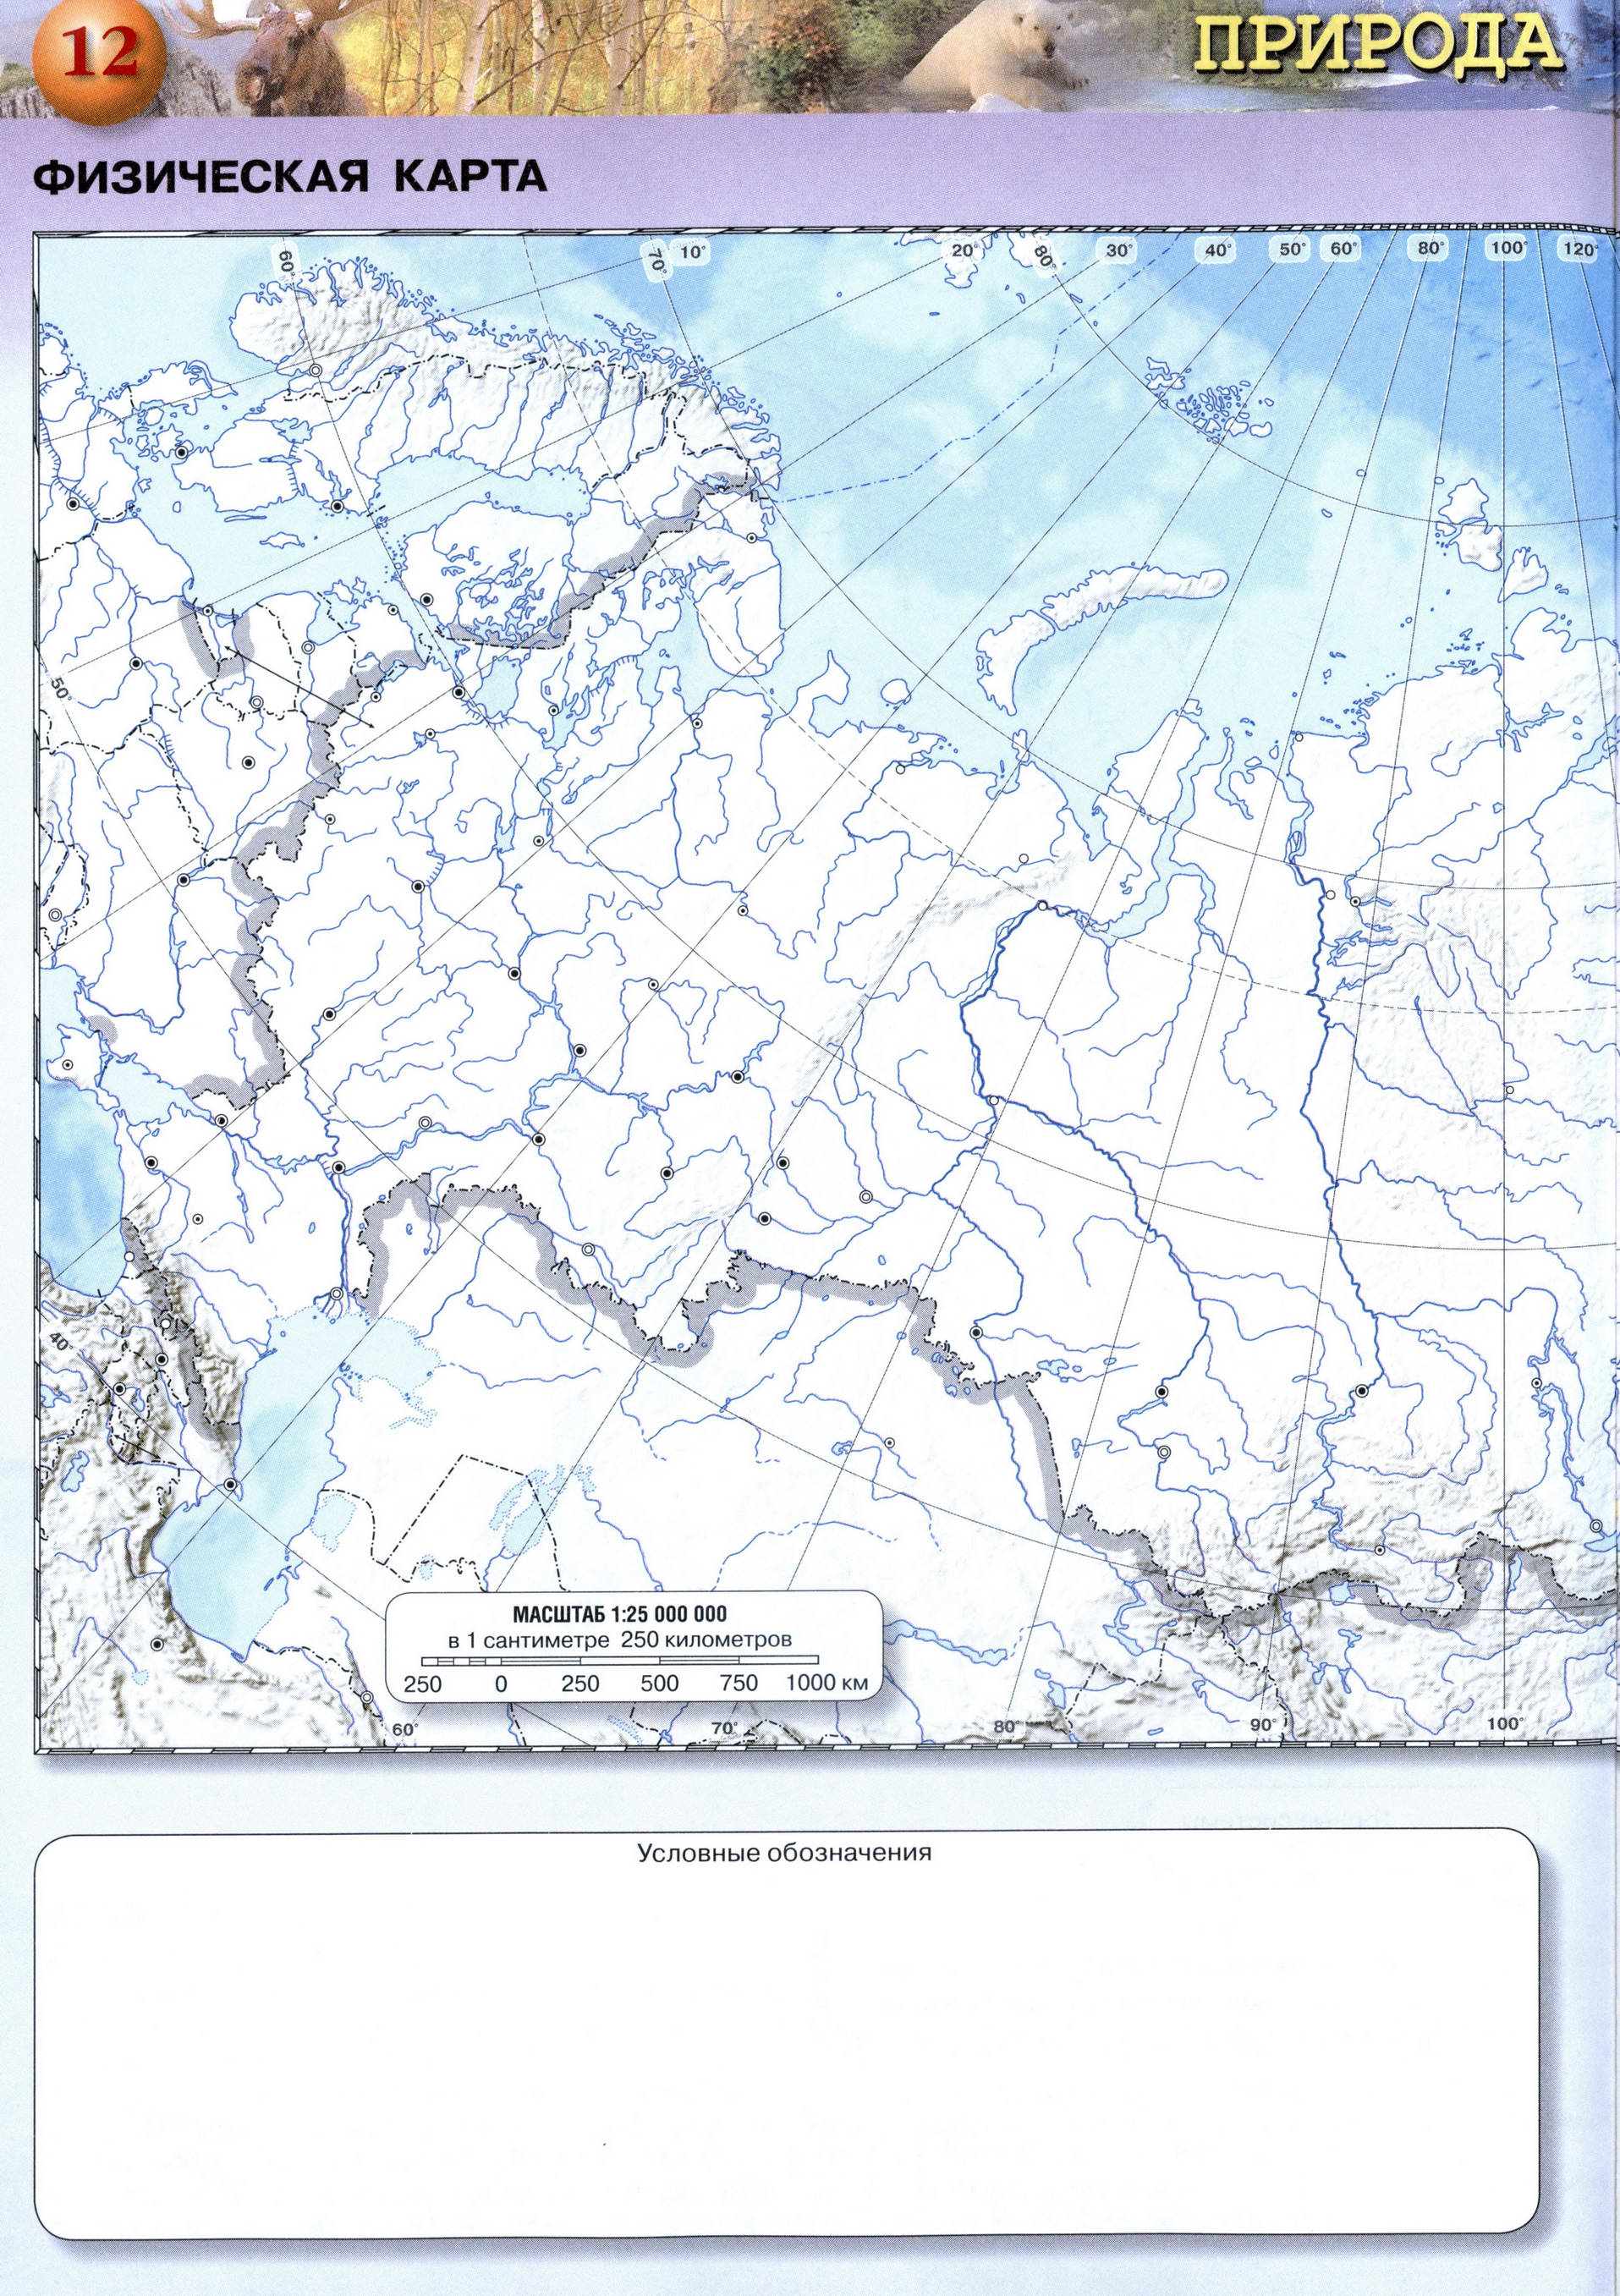 Физическая карта России контурная серия Сферы скачать и распечатать -Решебник